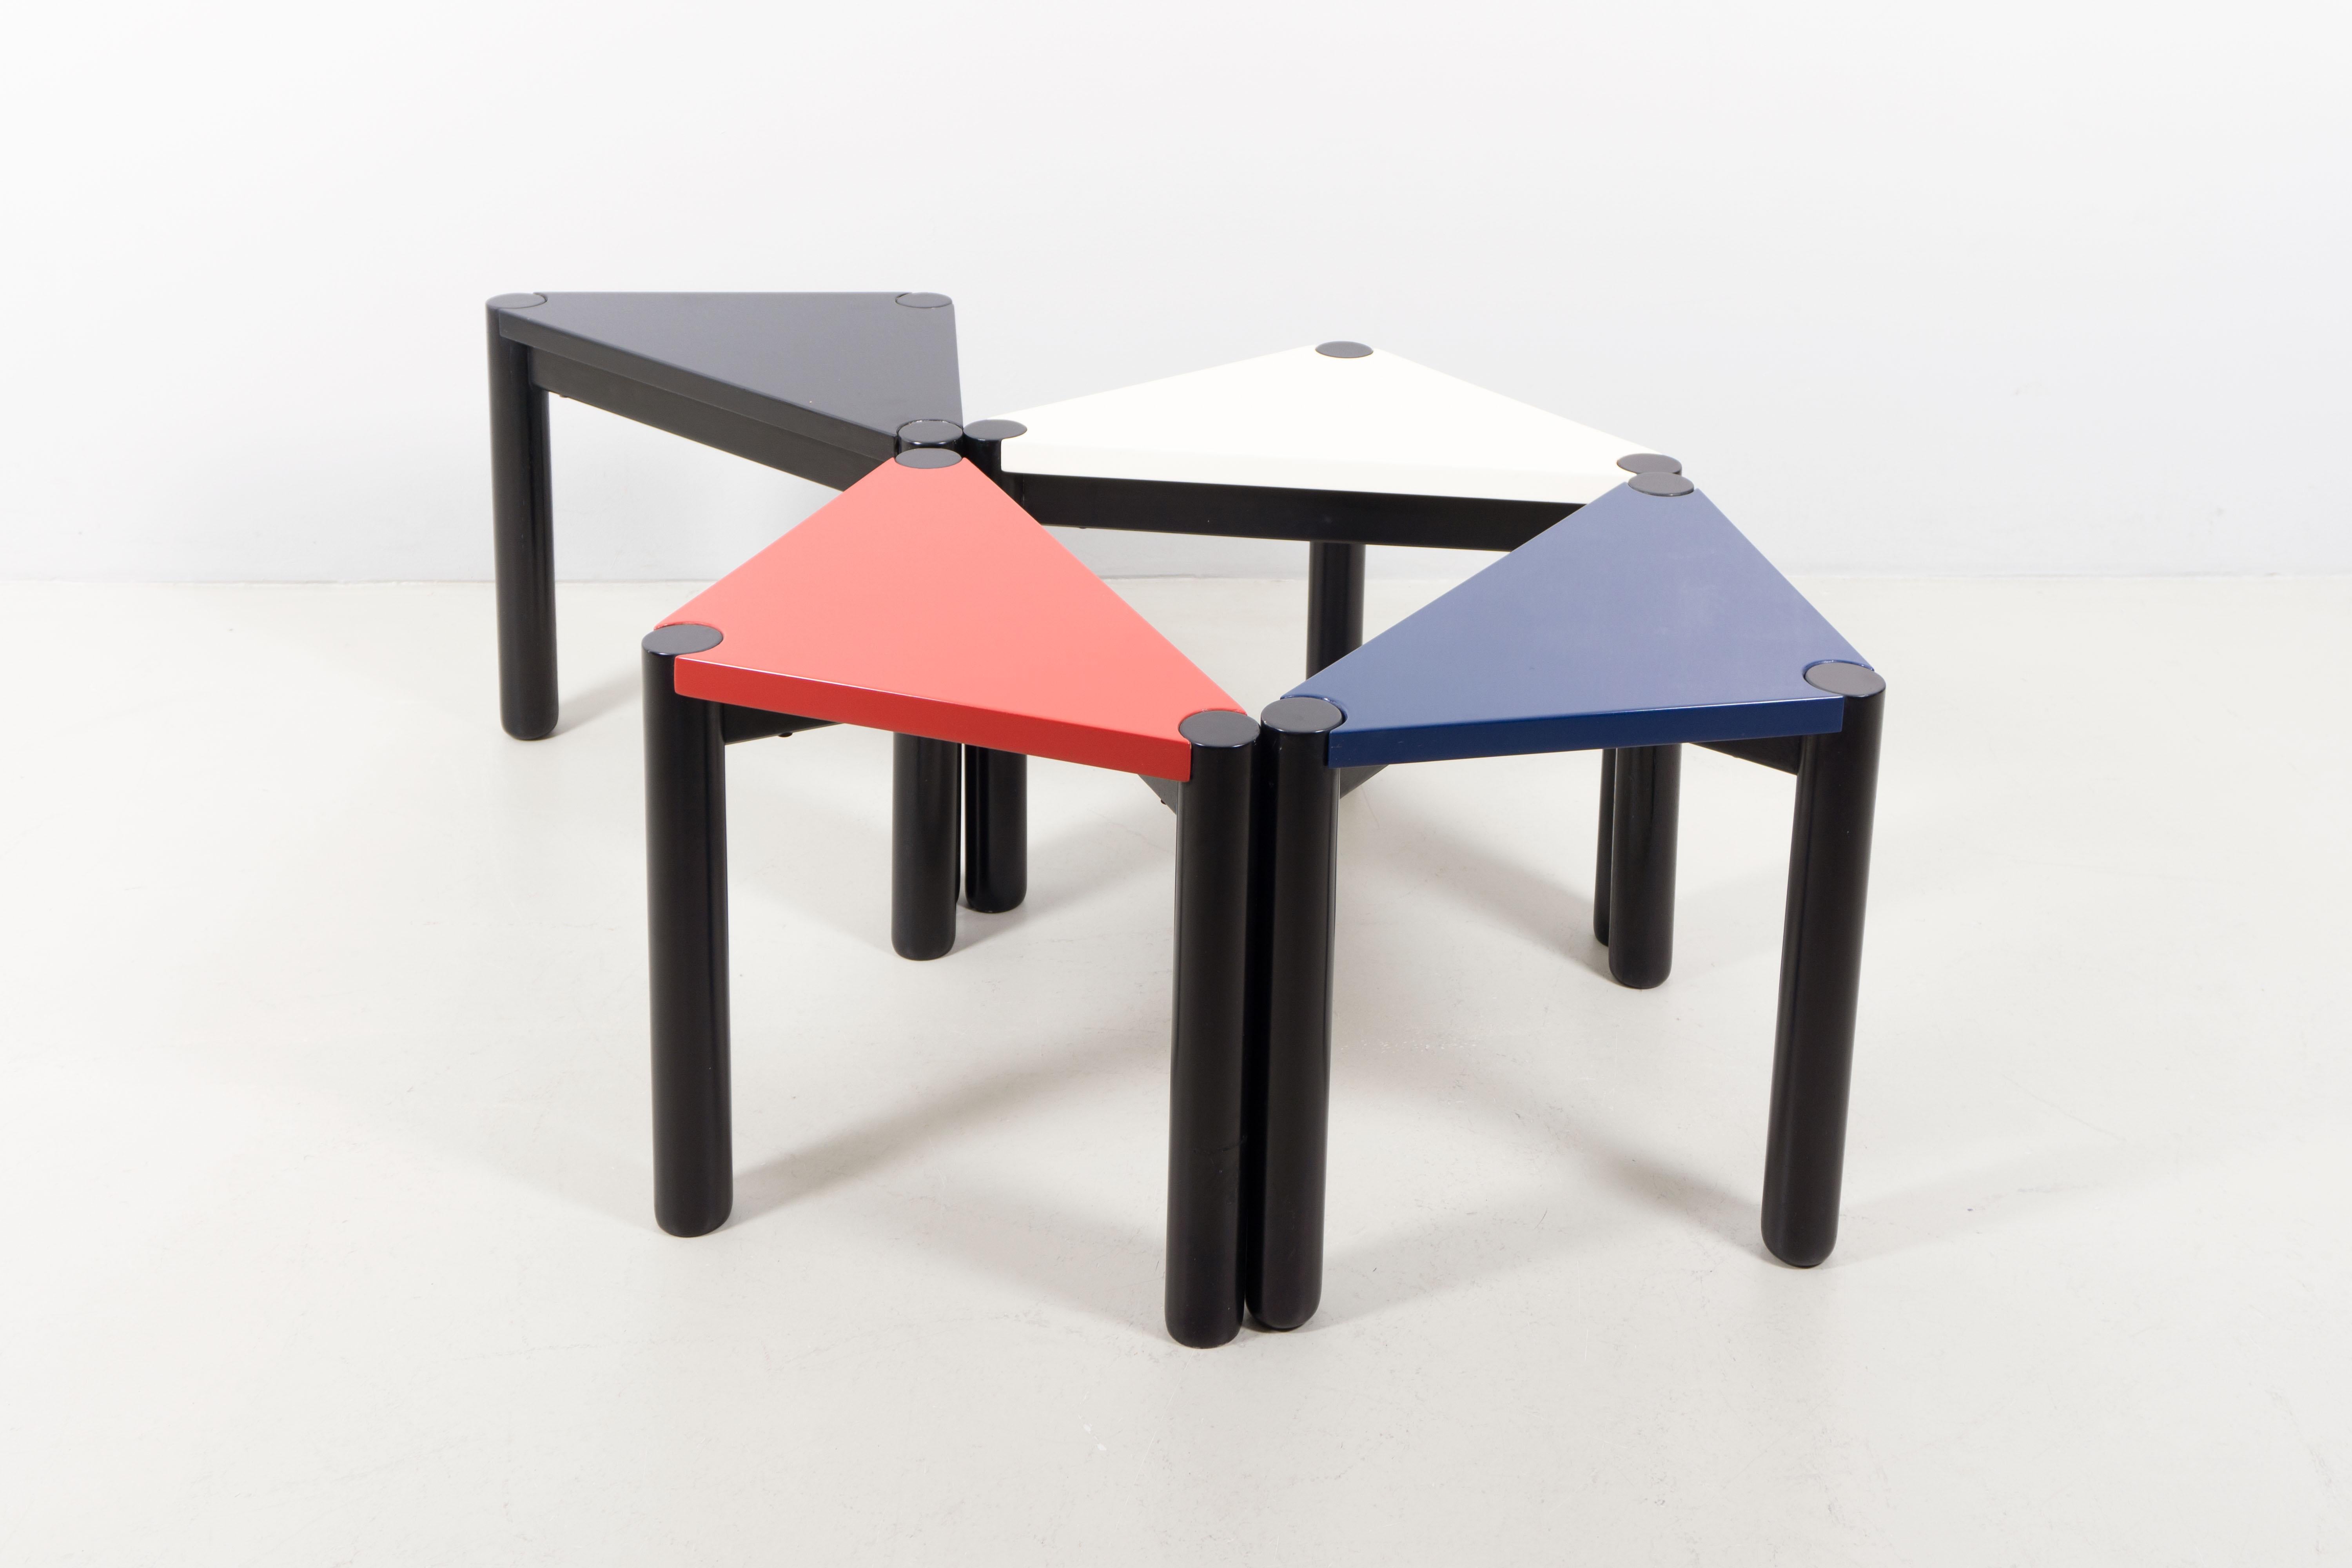 Vier Tische, entworfen von Ico Parisi um das Jahr 1970. Jeder Tisch ist aus Holz gefertigt und in verschiedenen Farben lackiert: weiß, rot, marine und schwarz. Parisi vereint mit diesen Tischen spielerisches und rationales Design. Sie laden die